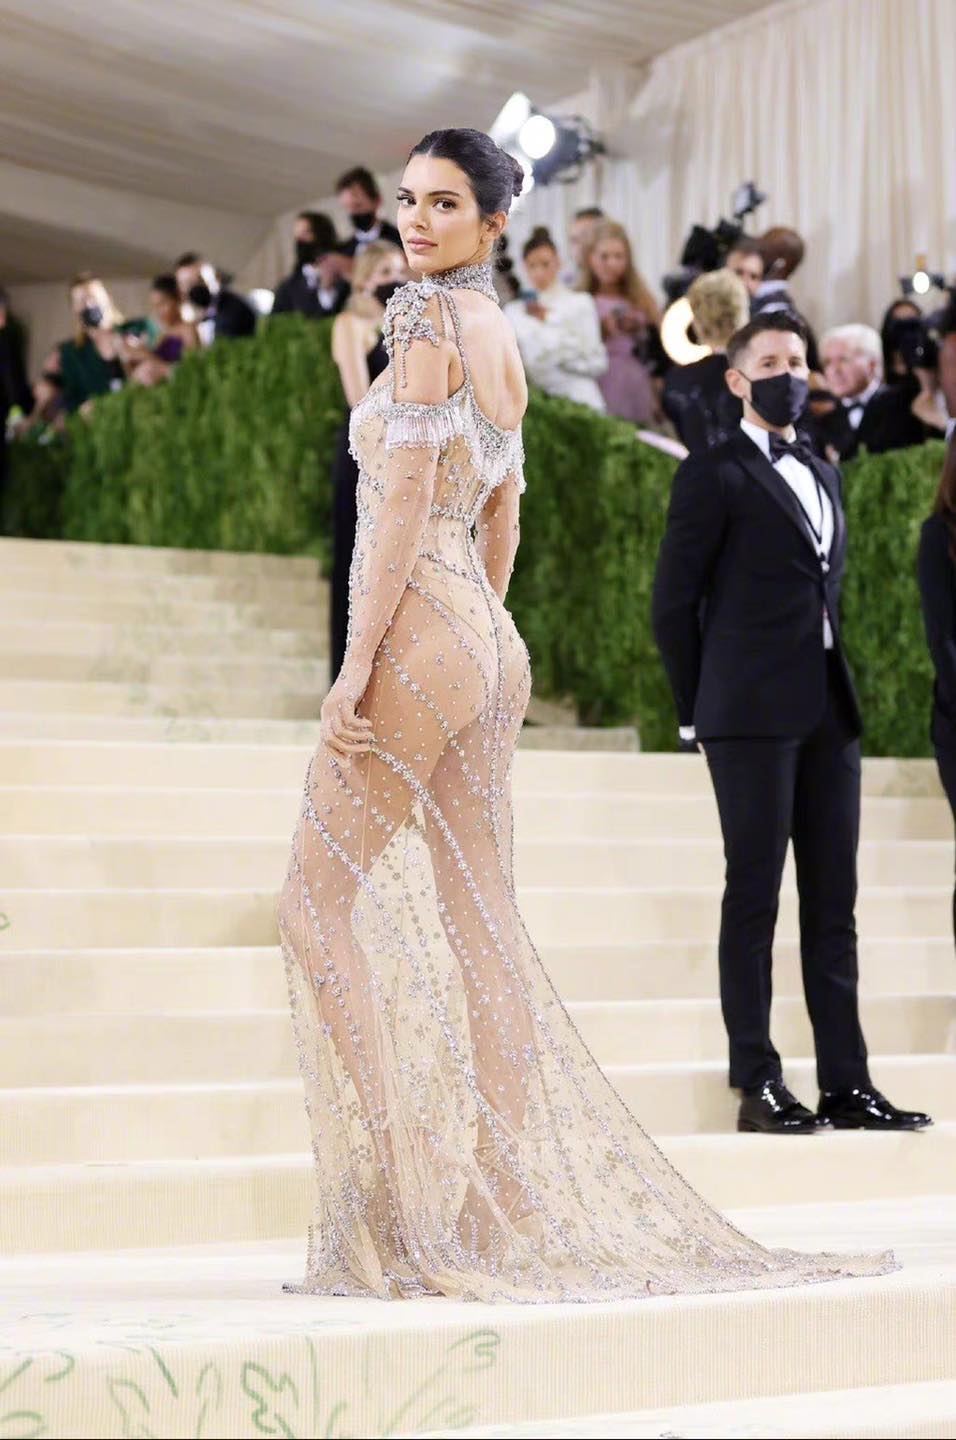 Chiếc đầm của Ngọc Trinh tại Cannes được so sánh với với mỹ nhân Kendall Jenner, nhưng thần thái bị cho kém sang hẳn - ảnh 1